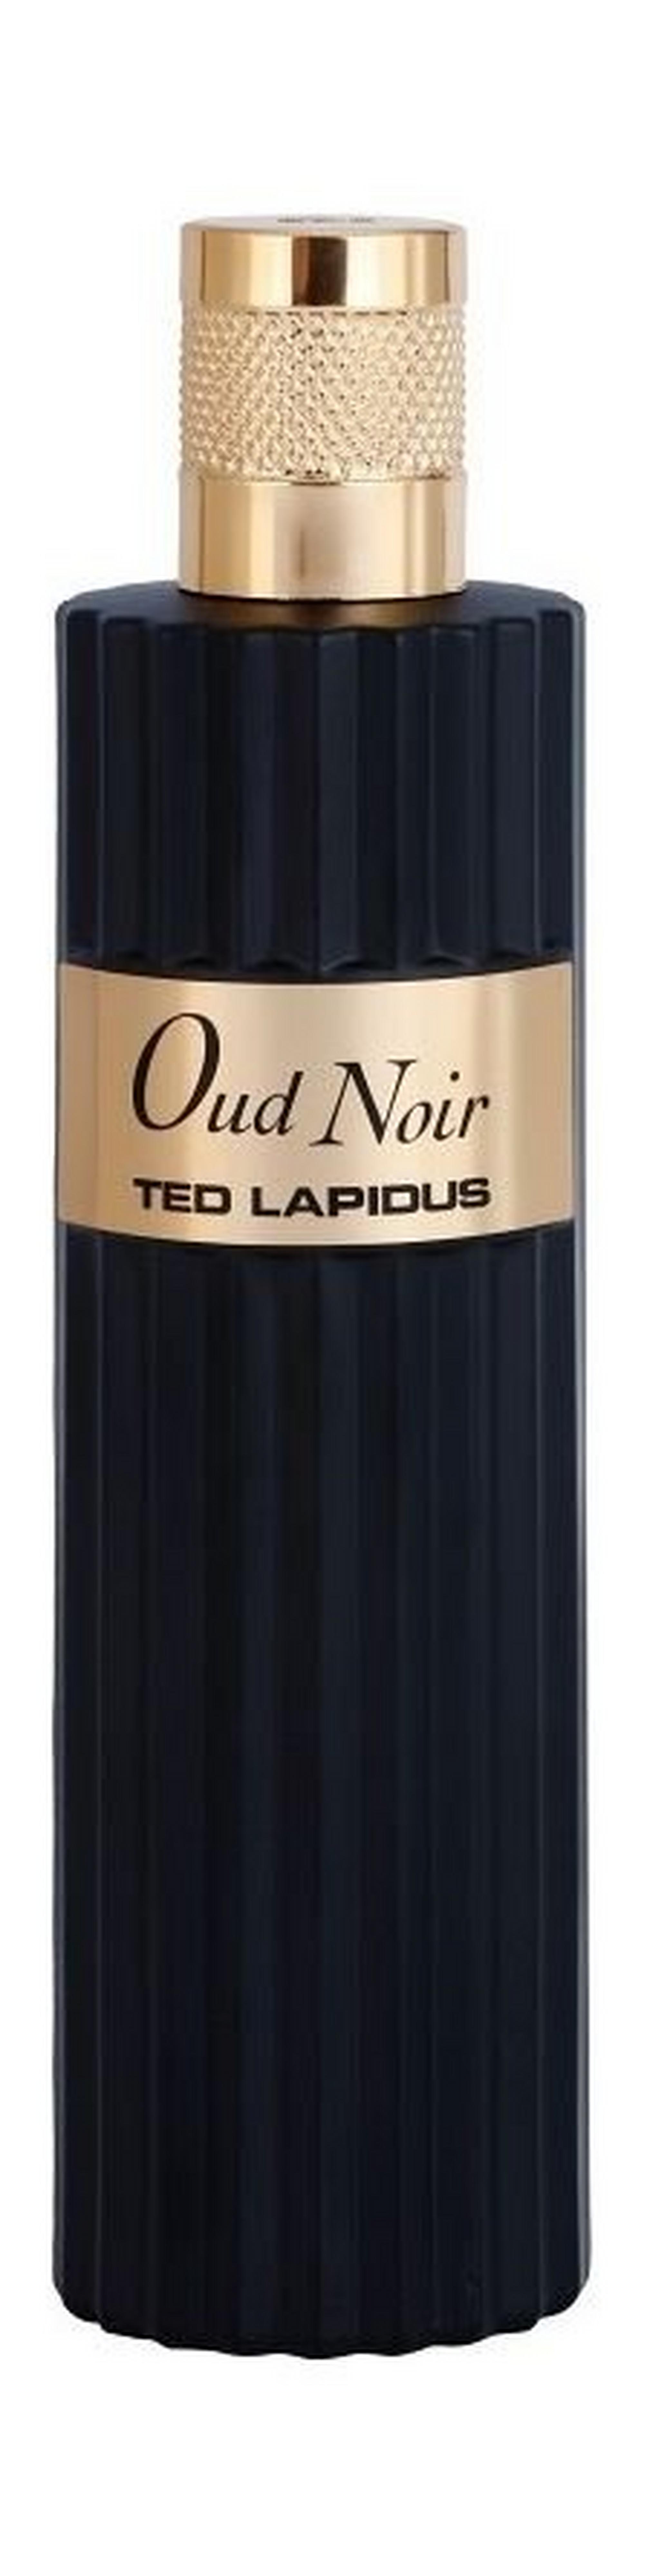 Oud Noir by Ted Lapidus 100ml For Men and Women Eau de Parfum